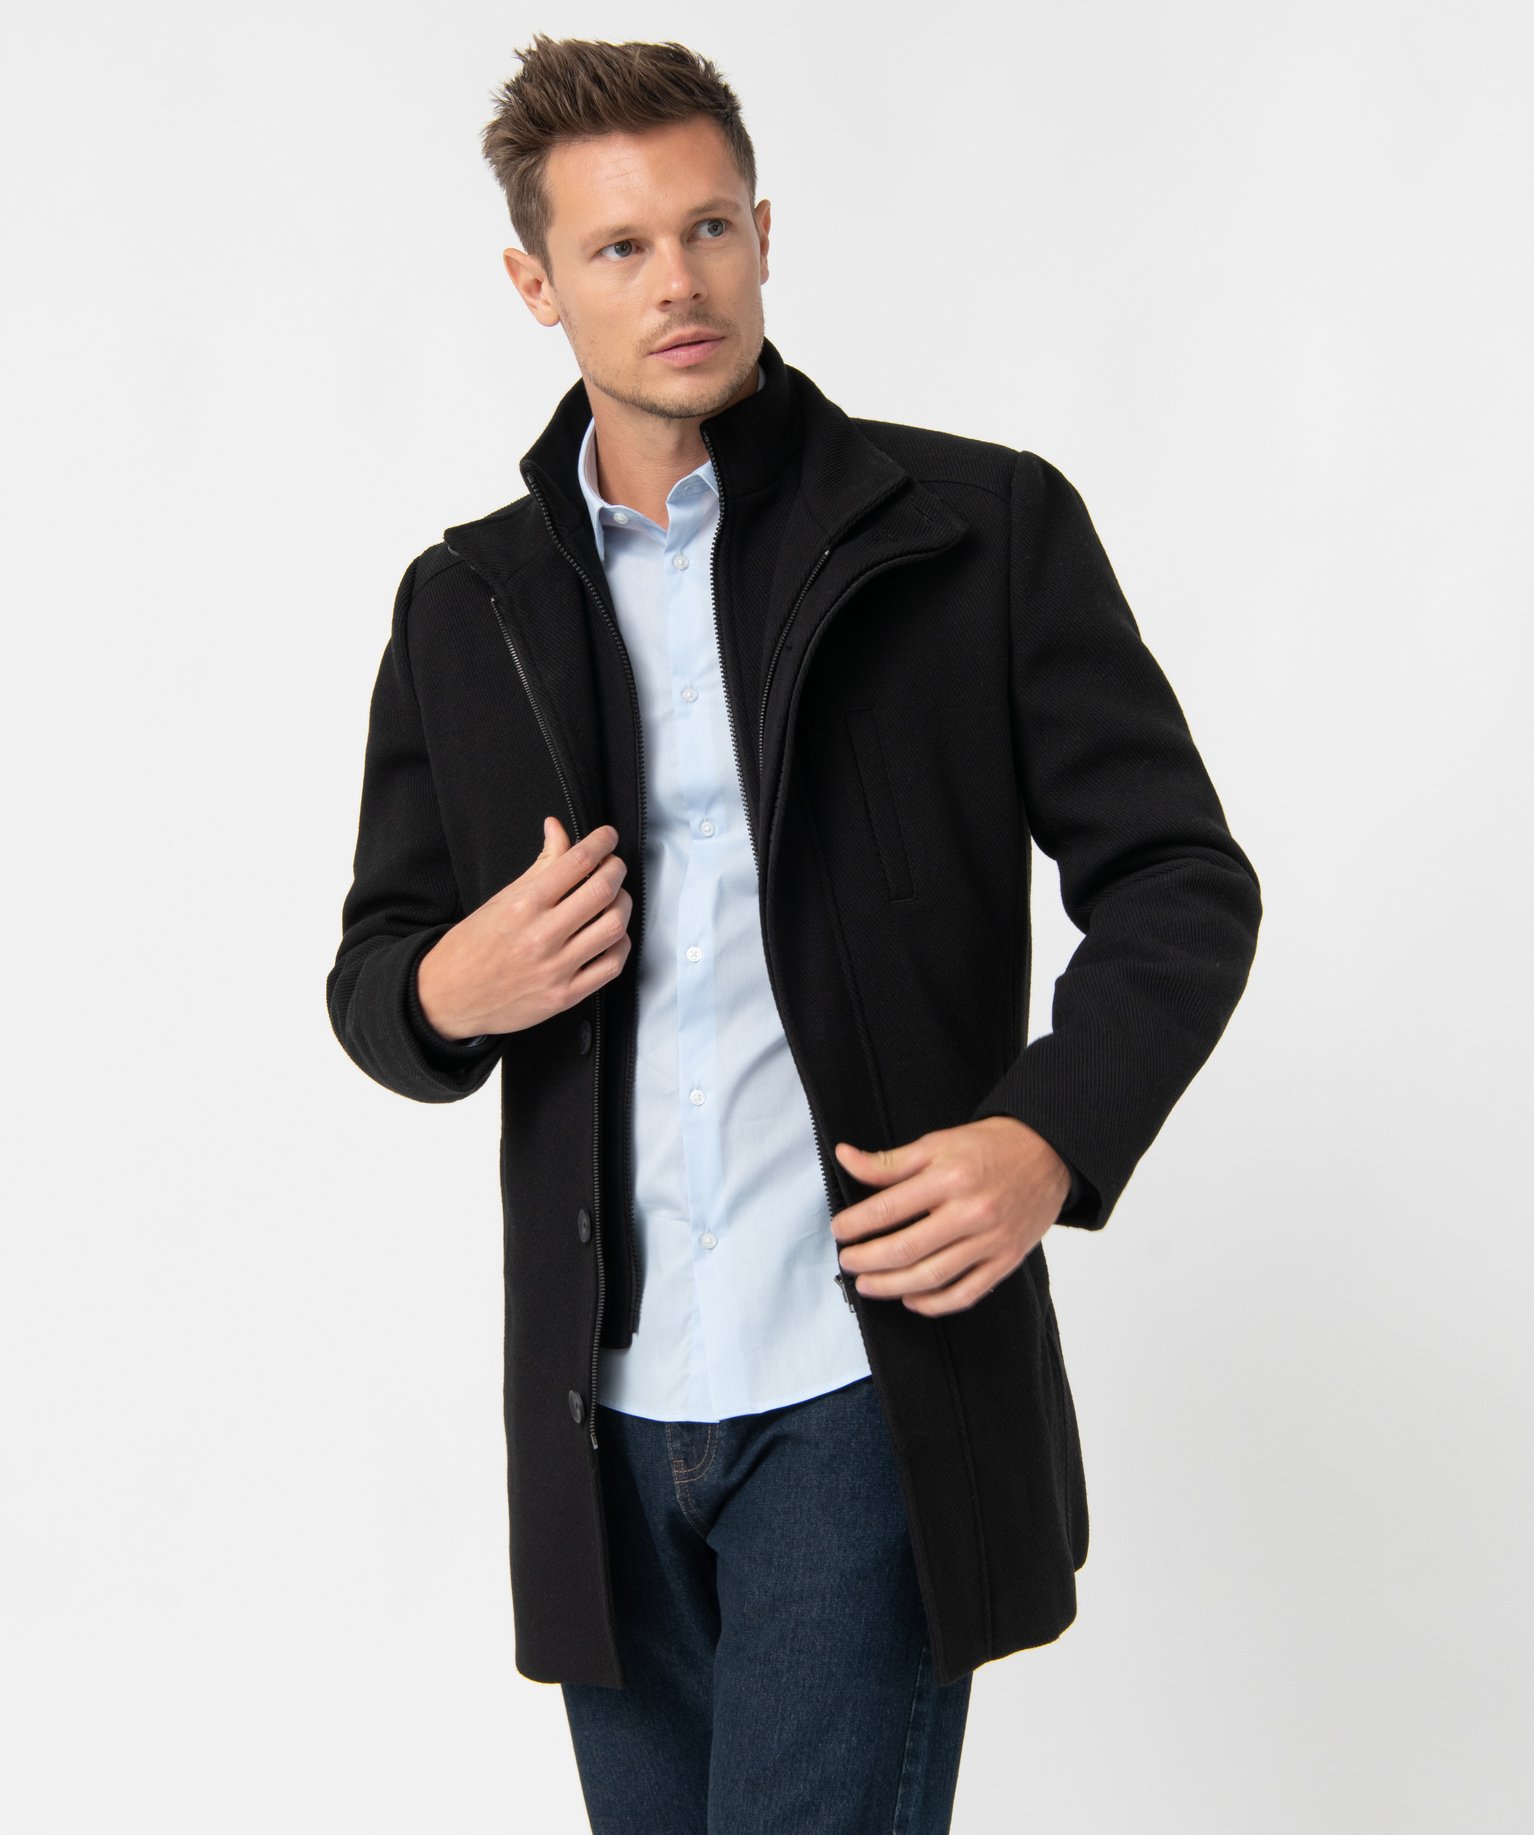 manteau homme court avec col interieur amovible noir